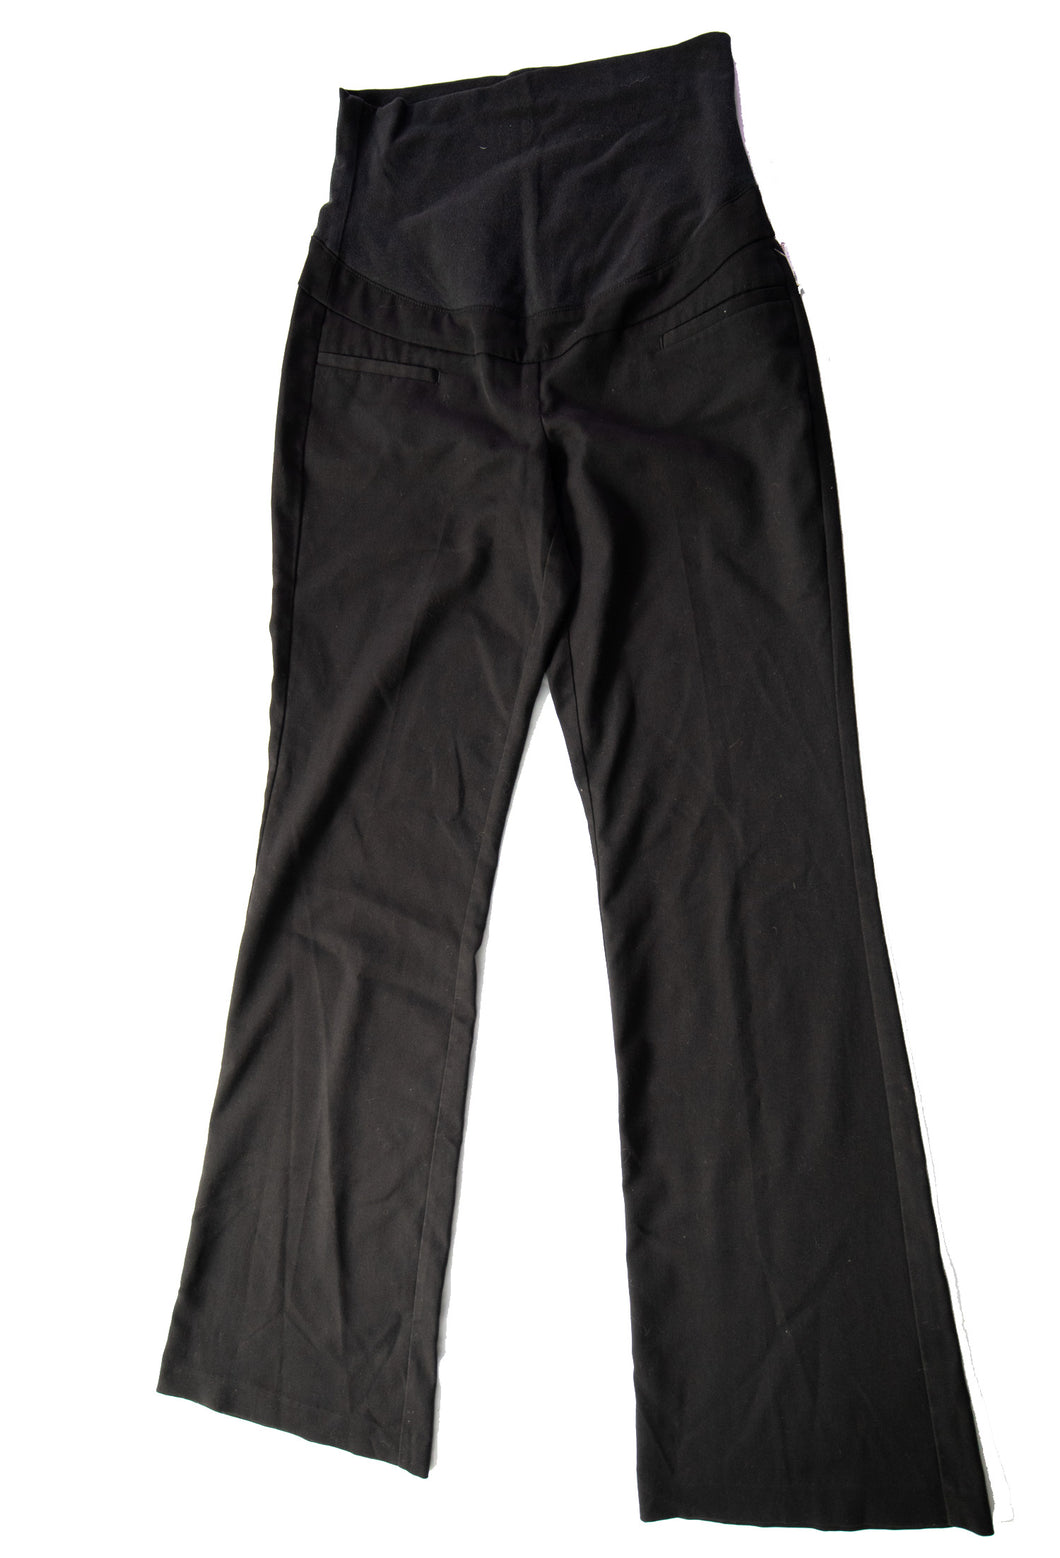 Pantalon habillé noir à jambe large XS Thyme Maternité